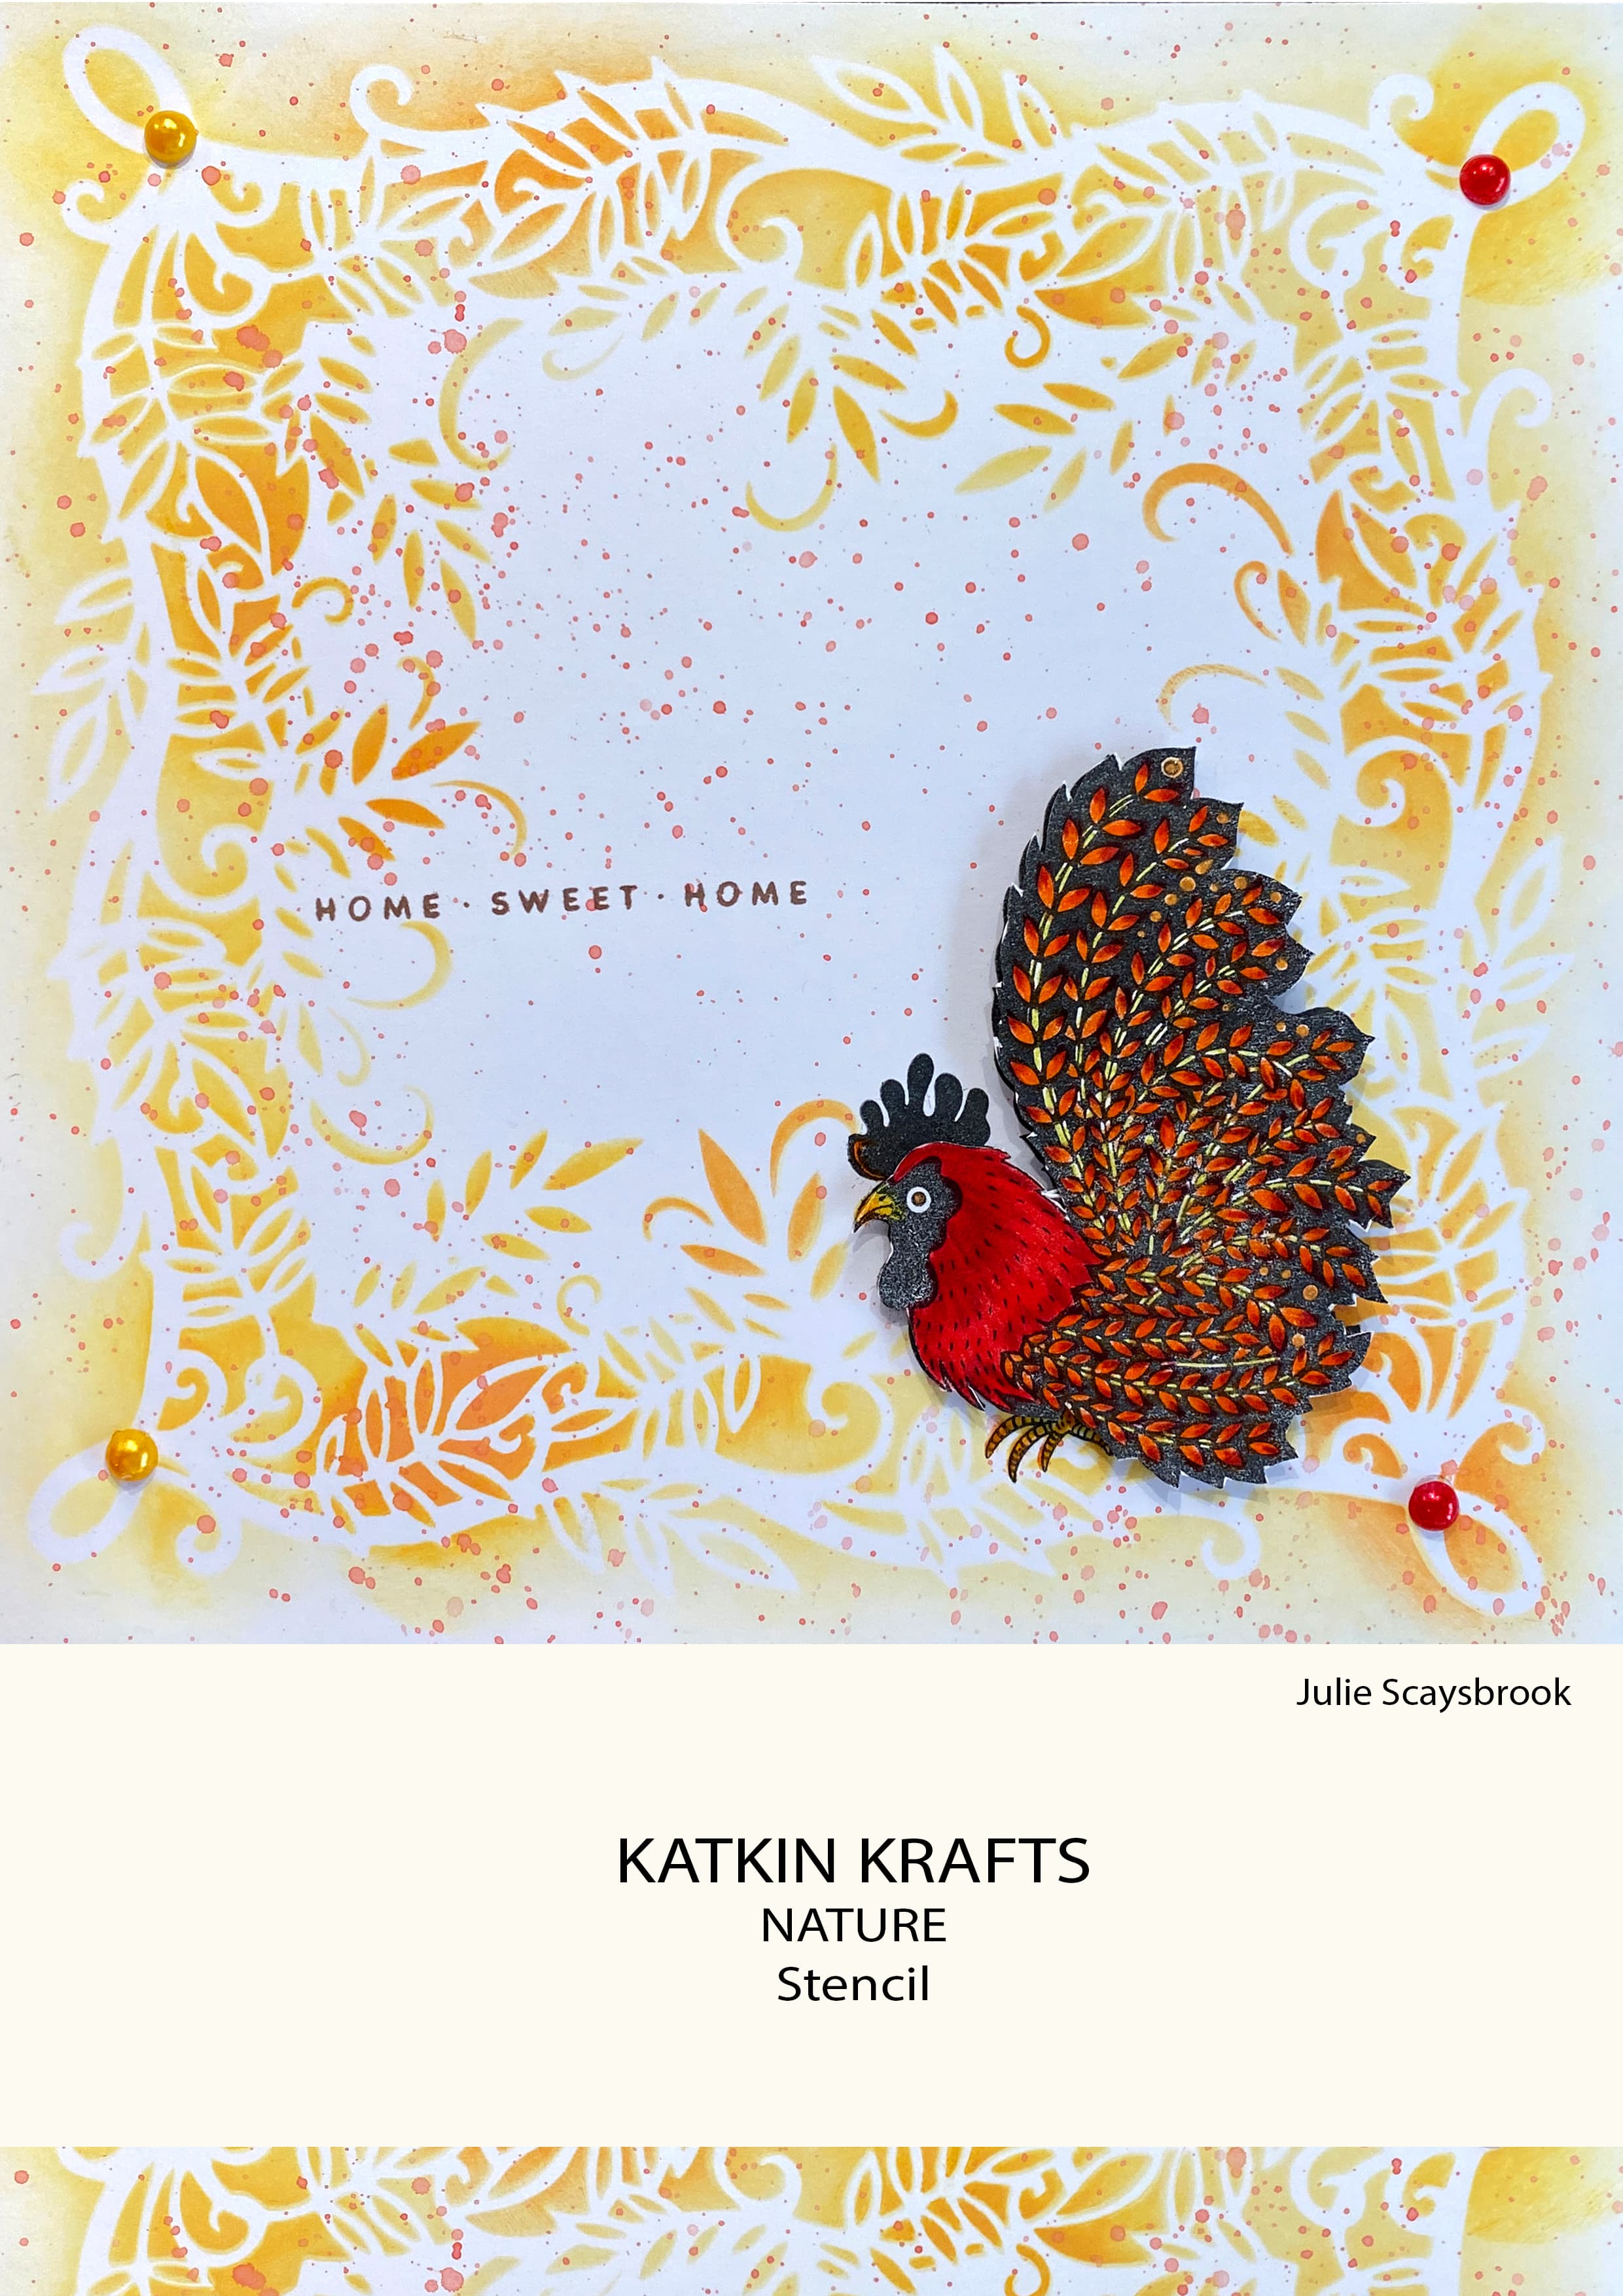 Katkin Krafts Nature 7 in x 7 in Stencil